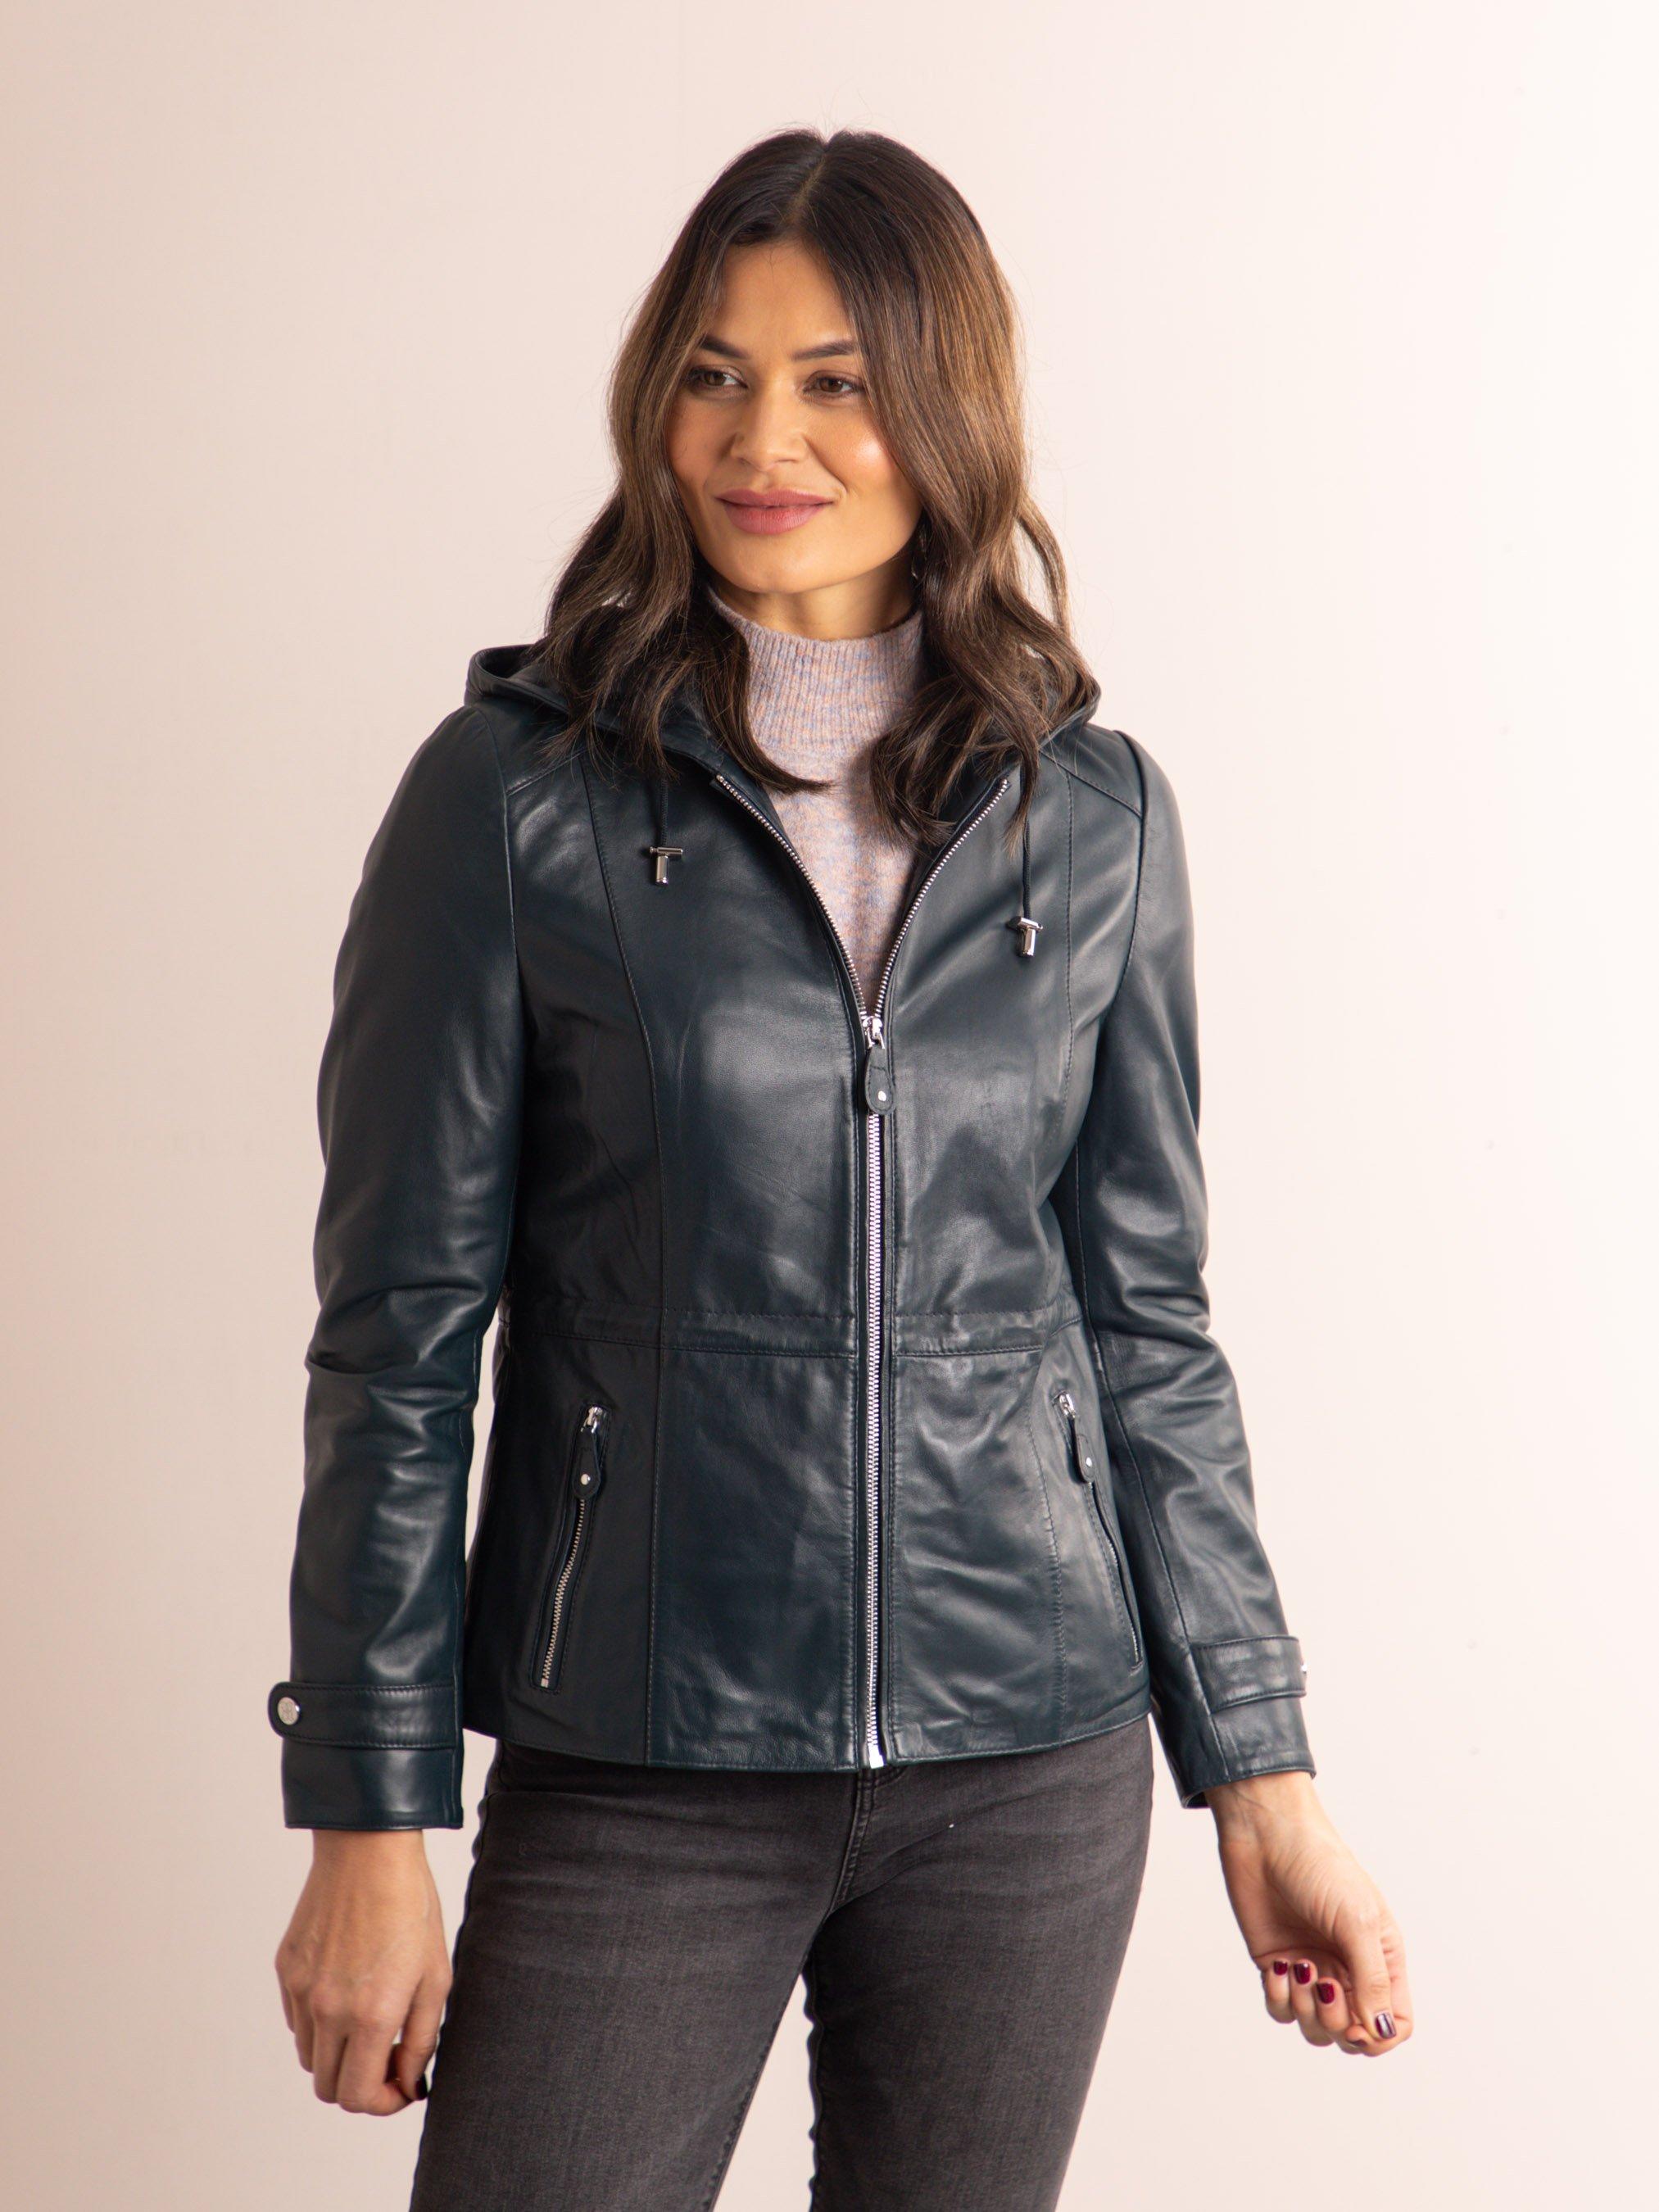 Кожаная куртка Ambleville с капюшоном Lakeland Leather, синий мужские пальто с воротником стойкой кожаные байкерские куртки мотоциклетная черная коричневая кожаная куртка 2022 размера плюс